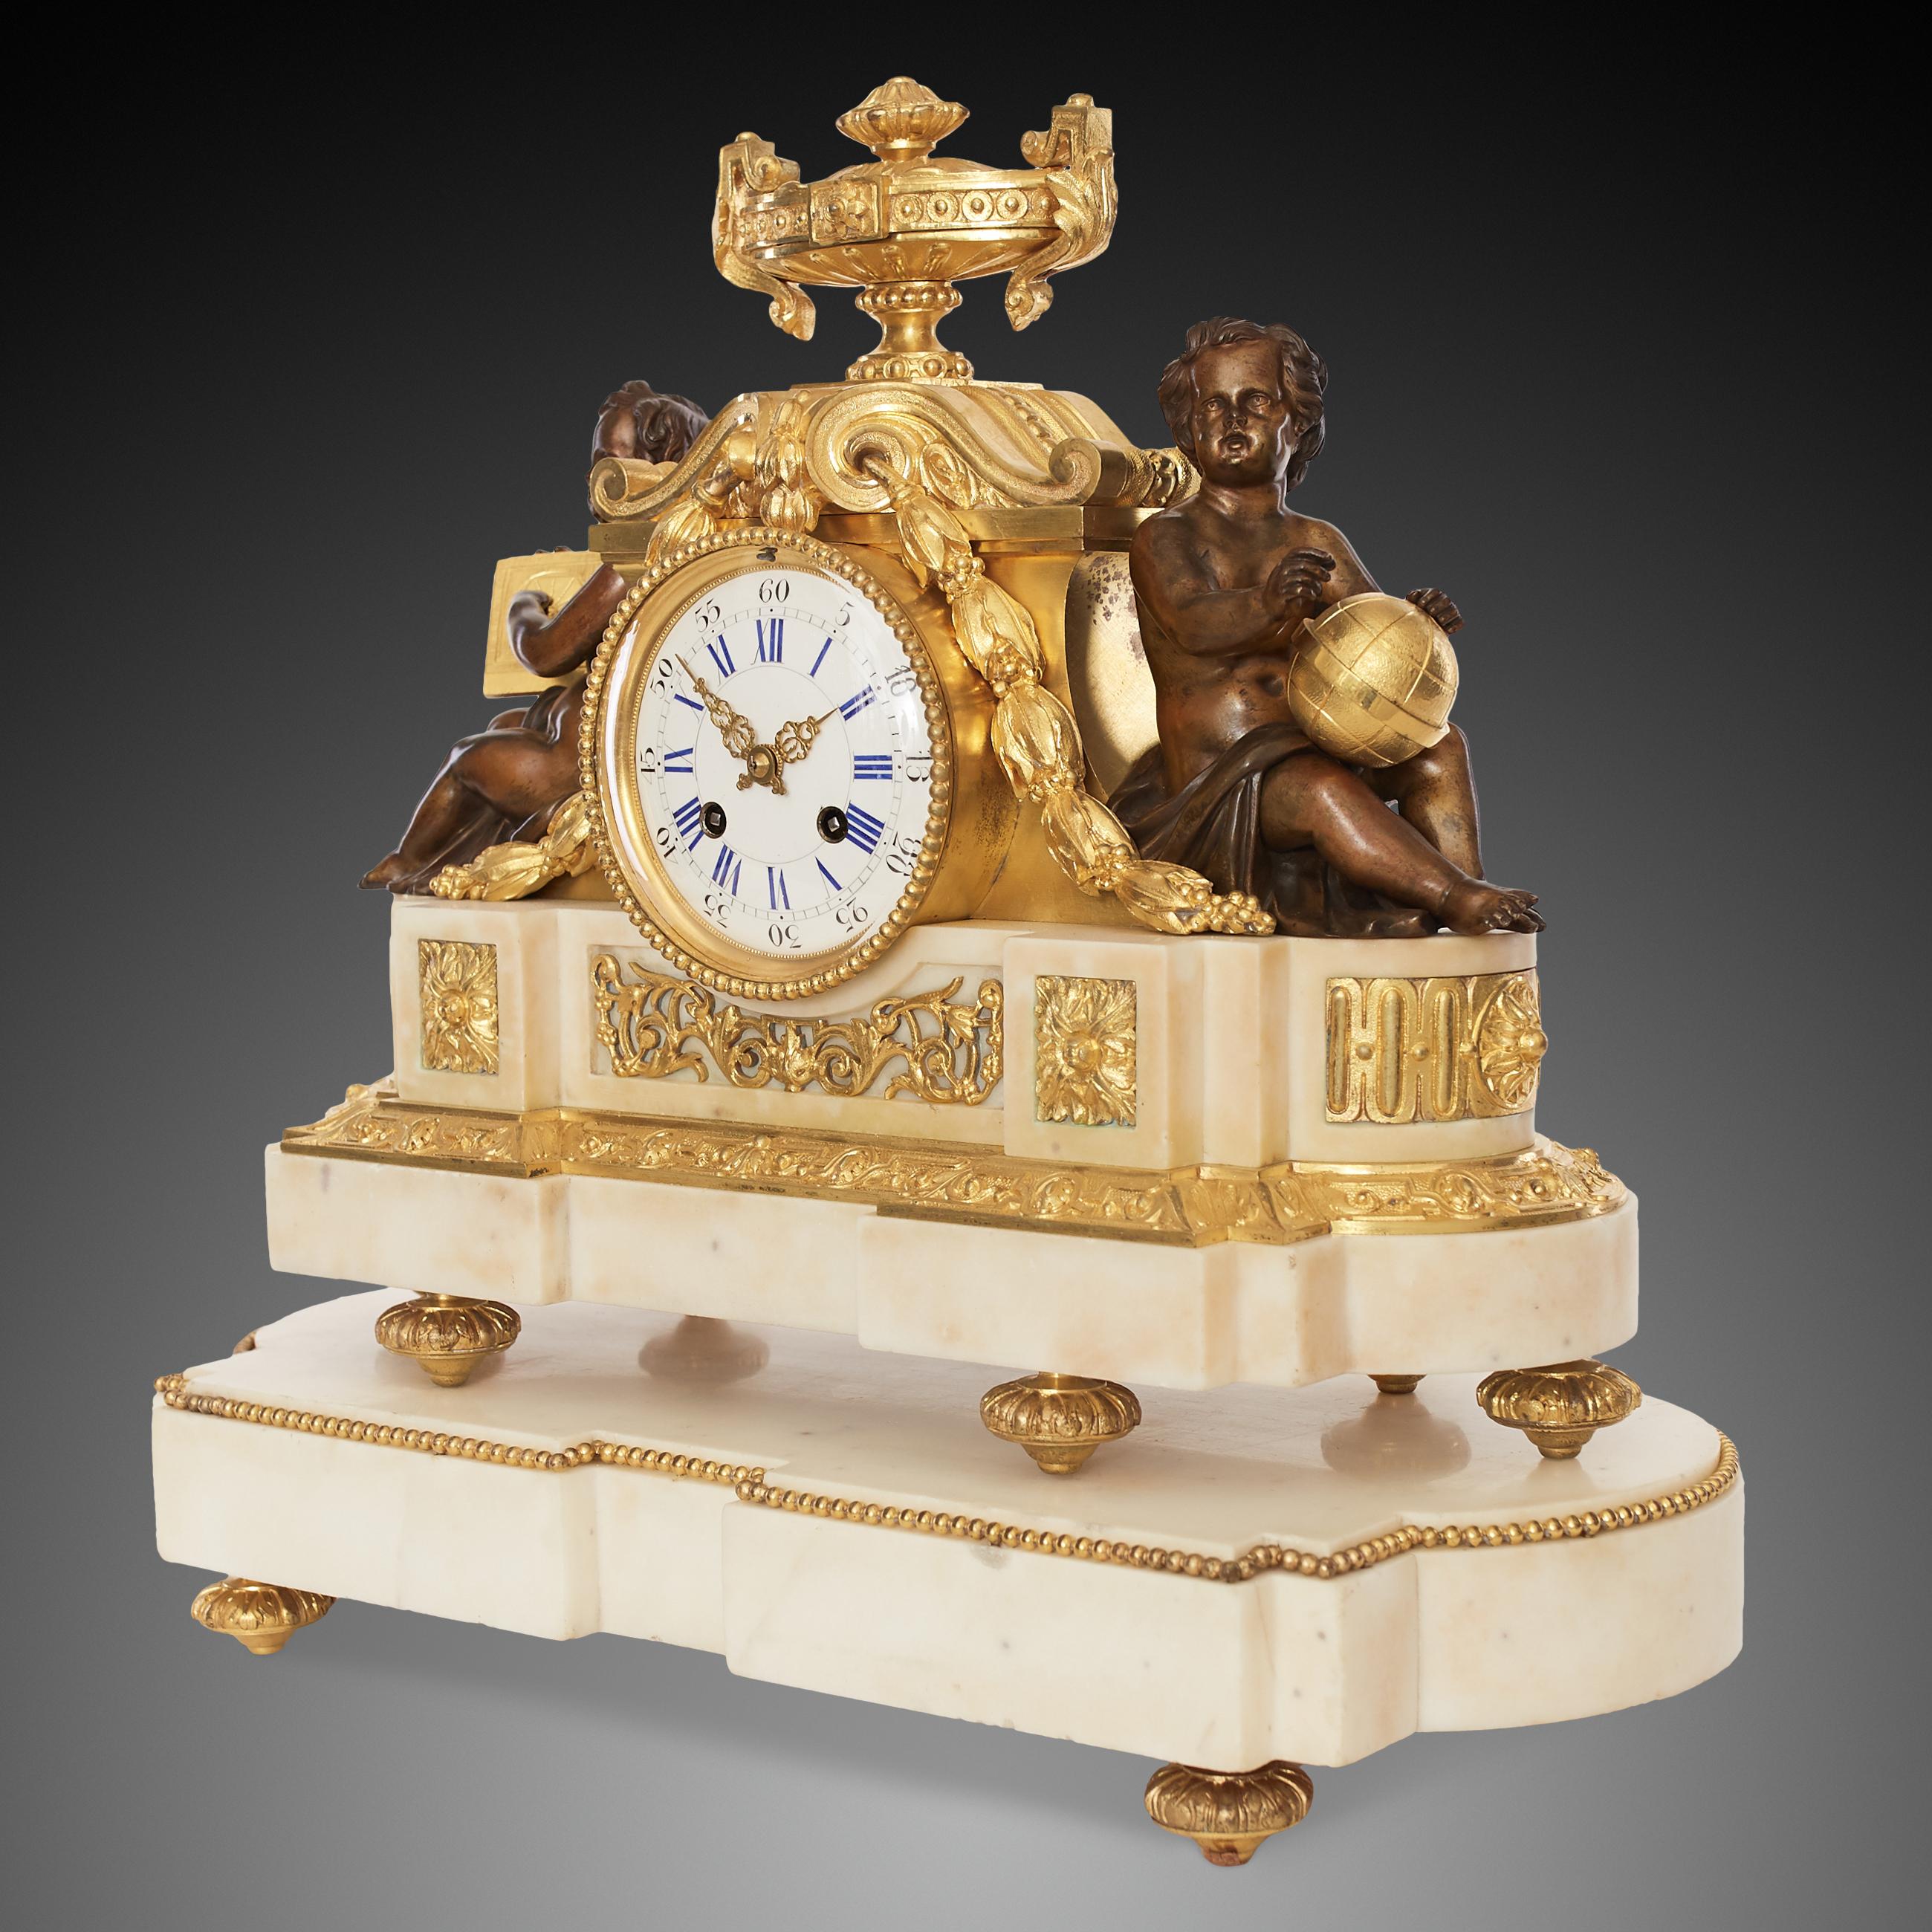 Im Gegensatz zu seinem Vorgänger, dem Rokoko, legt der Louis XVI-Stil immer mehr Wert auf einzelne Teile des Ganzen, auf Klarheit und Harmonie, wobei harte Kanten und Ecken vermieden werden. Häufig werden Bronze und weißer Marmor in Kombination